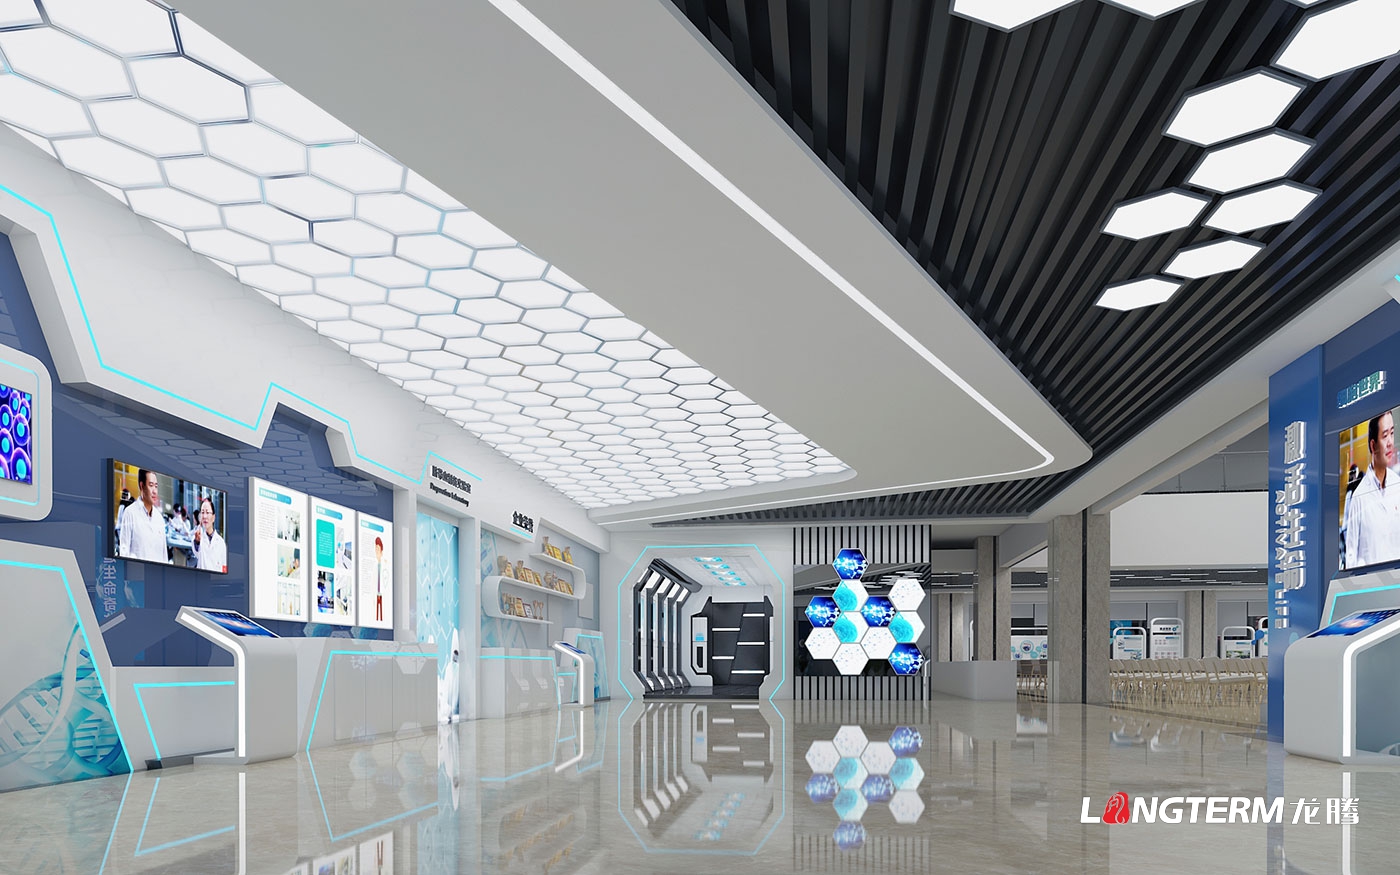 成都市科普教育基地(新生命干細胞)大廳升級改造設計效果圖——科技化、數字化、互動化展覽展示